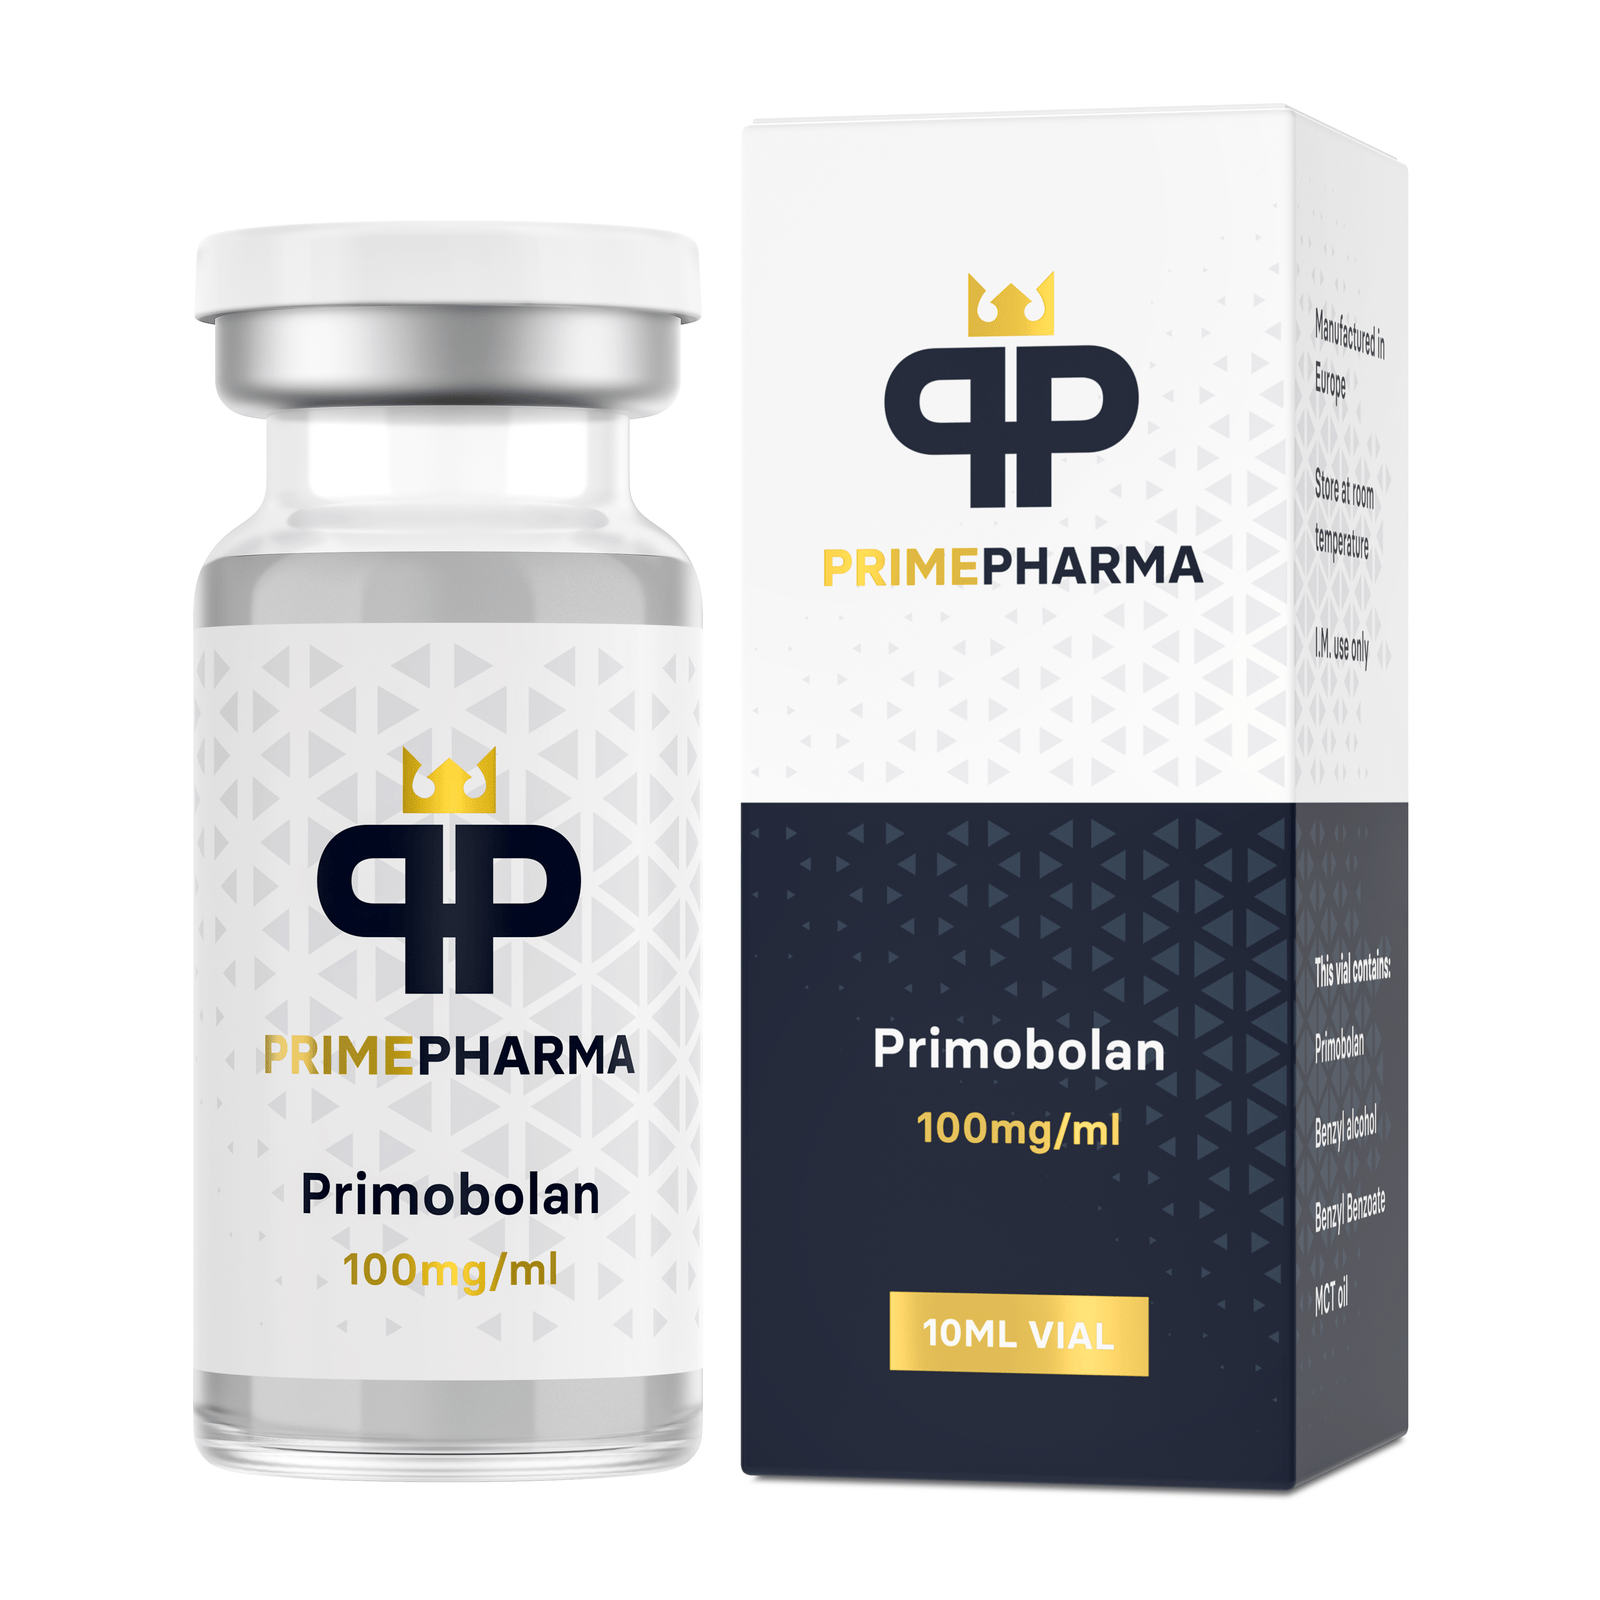 Prime Pharma Primo 100